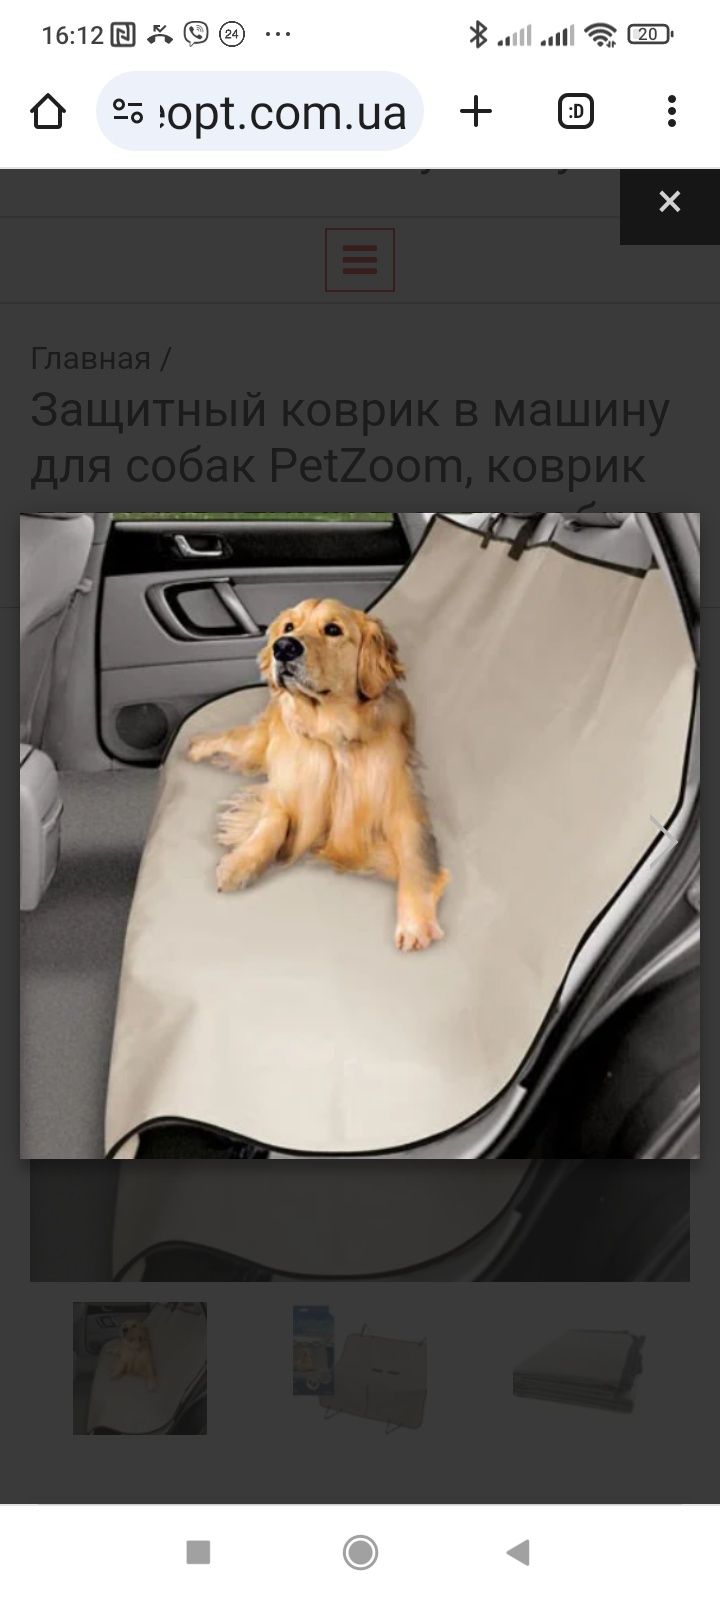 Защитный коврик в машину для собаки